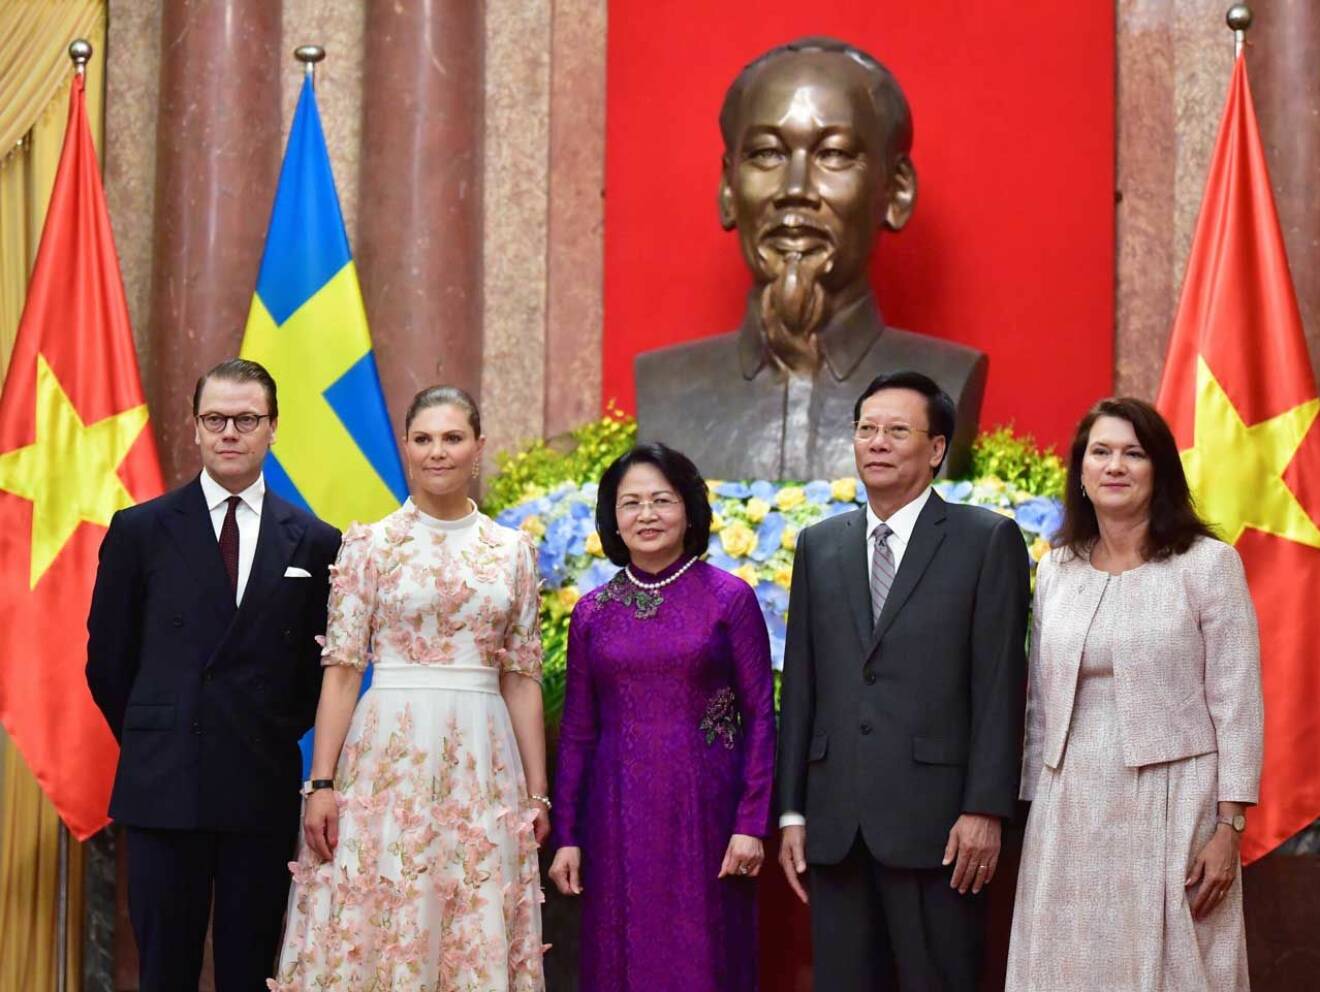 Svensk Damtidning är på plats när dessa bilder tas i presidentpalatset! Till höger om kronprinsessparet står vice presidenten med make, samt handelsminister Ann Linde.